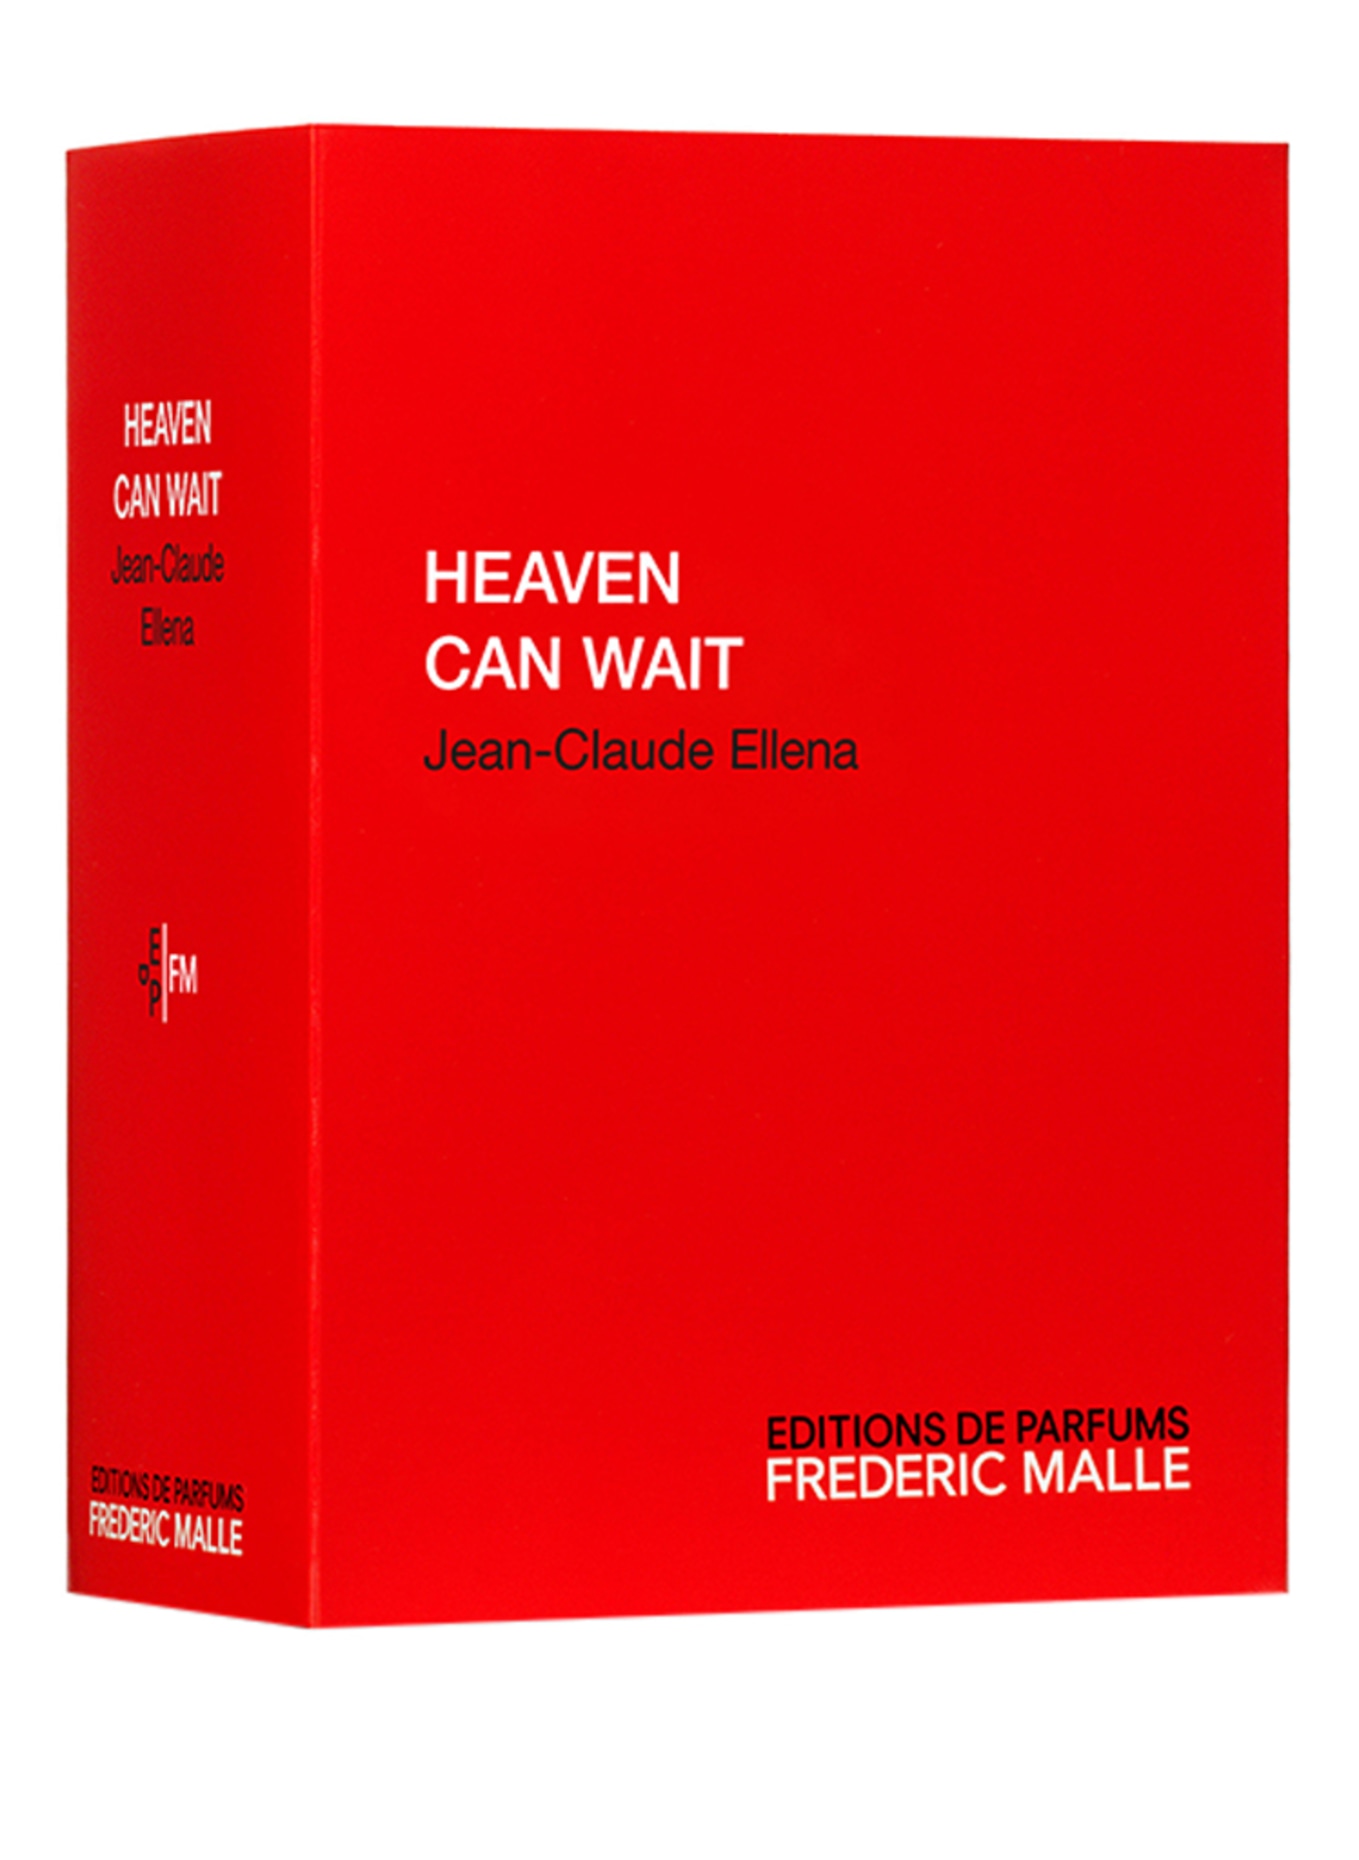 EDITIONS DE PARFUMS FREDERIC MALLE HEAVEN CAN WAIT (Bild 2)